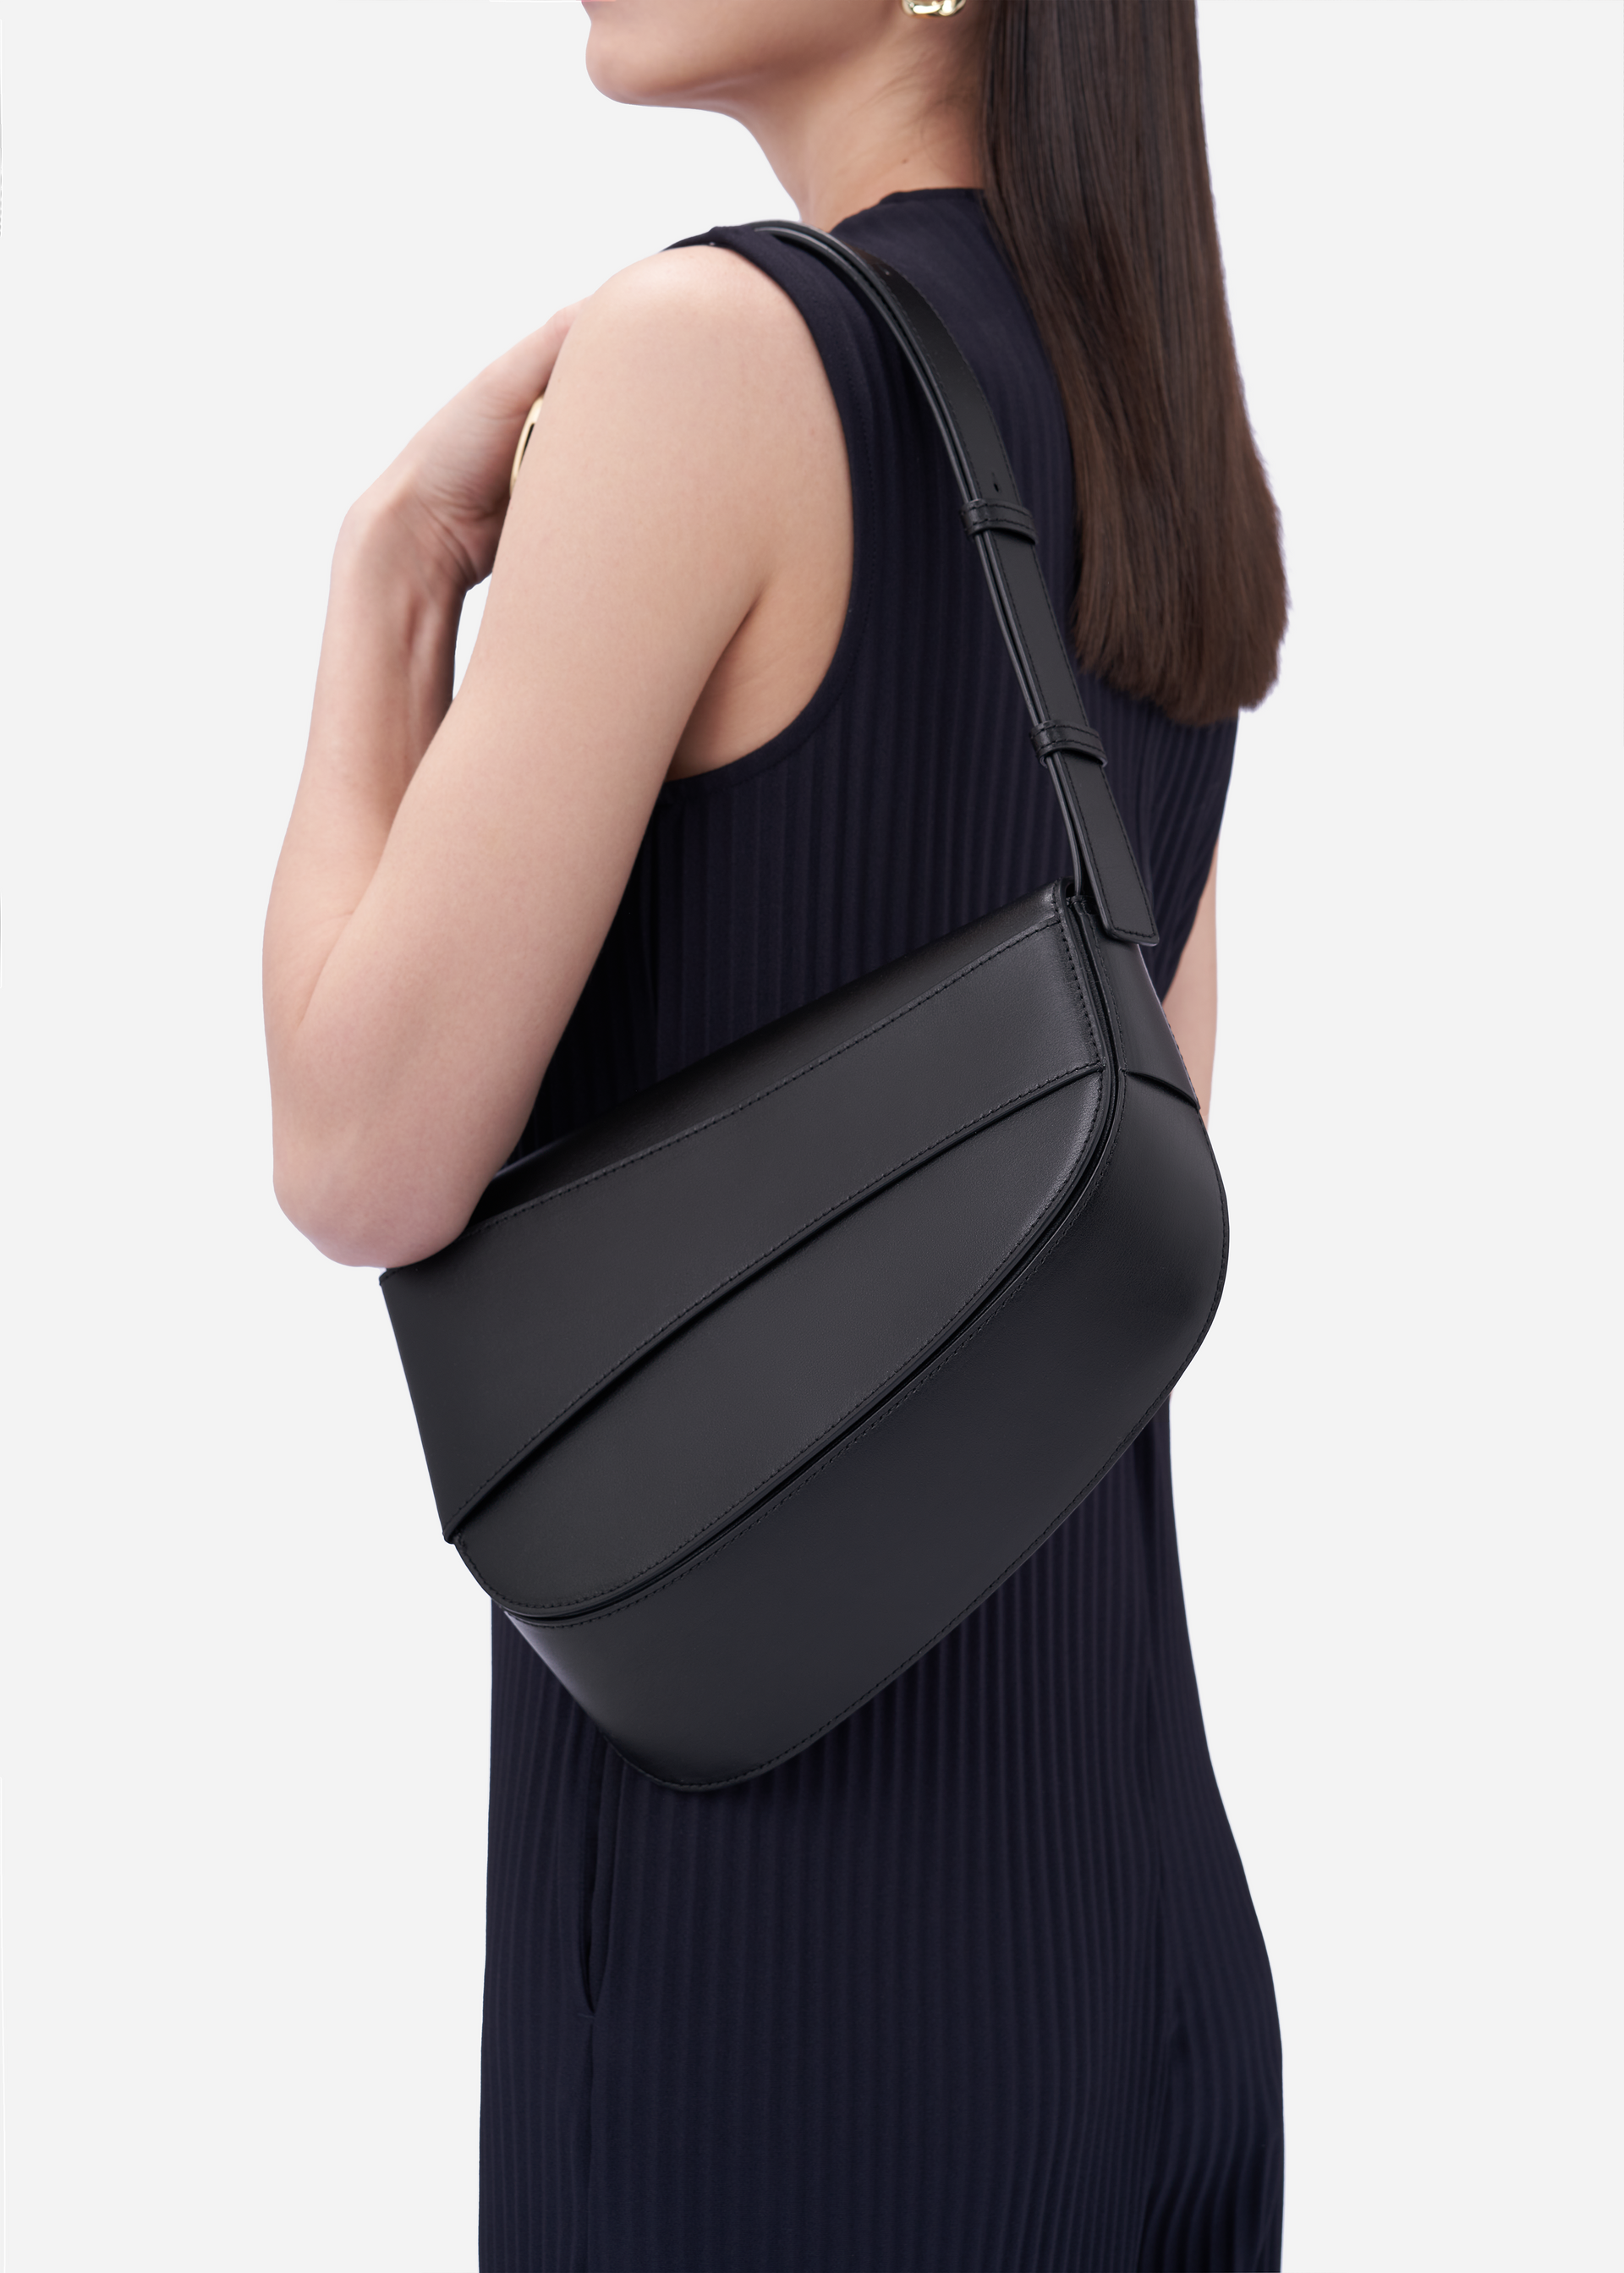 Marianne smooth leather shoulder bag in black